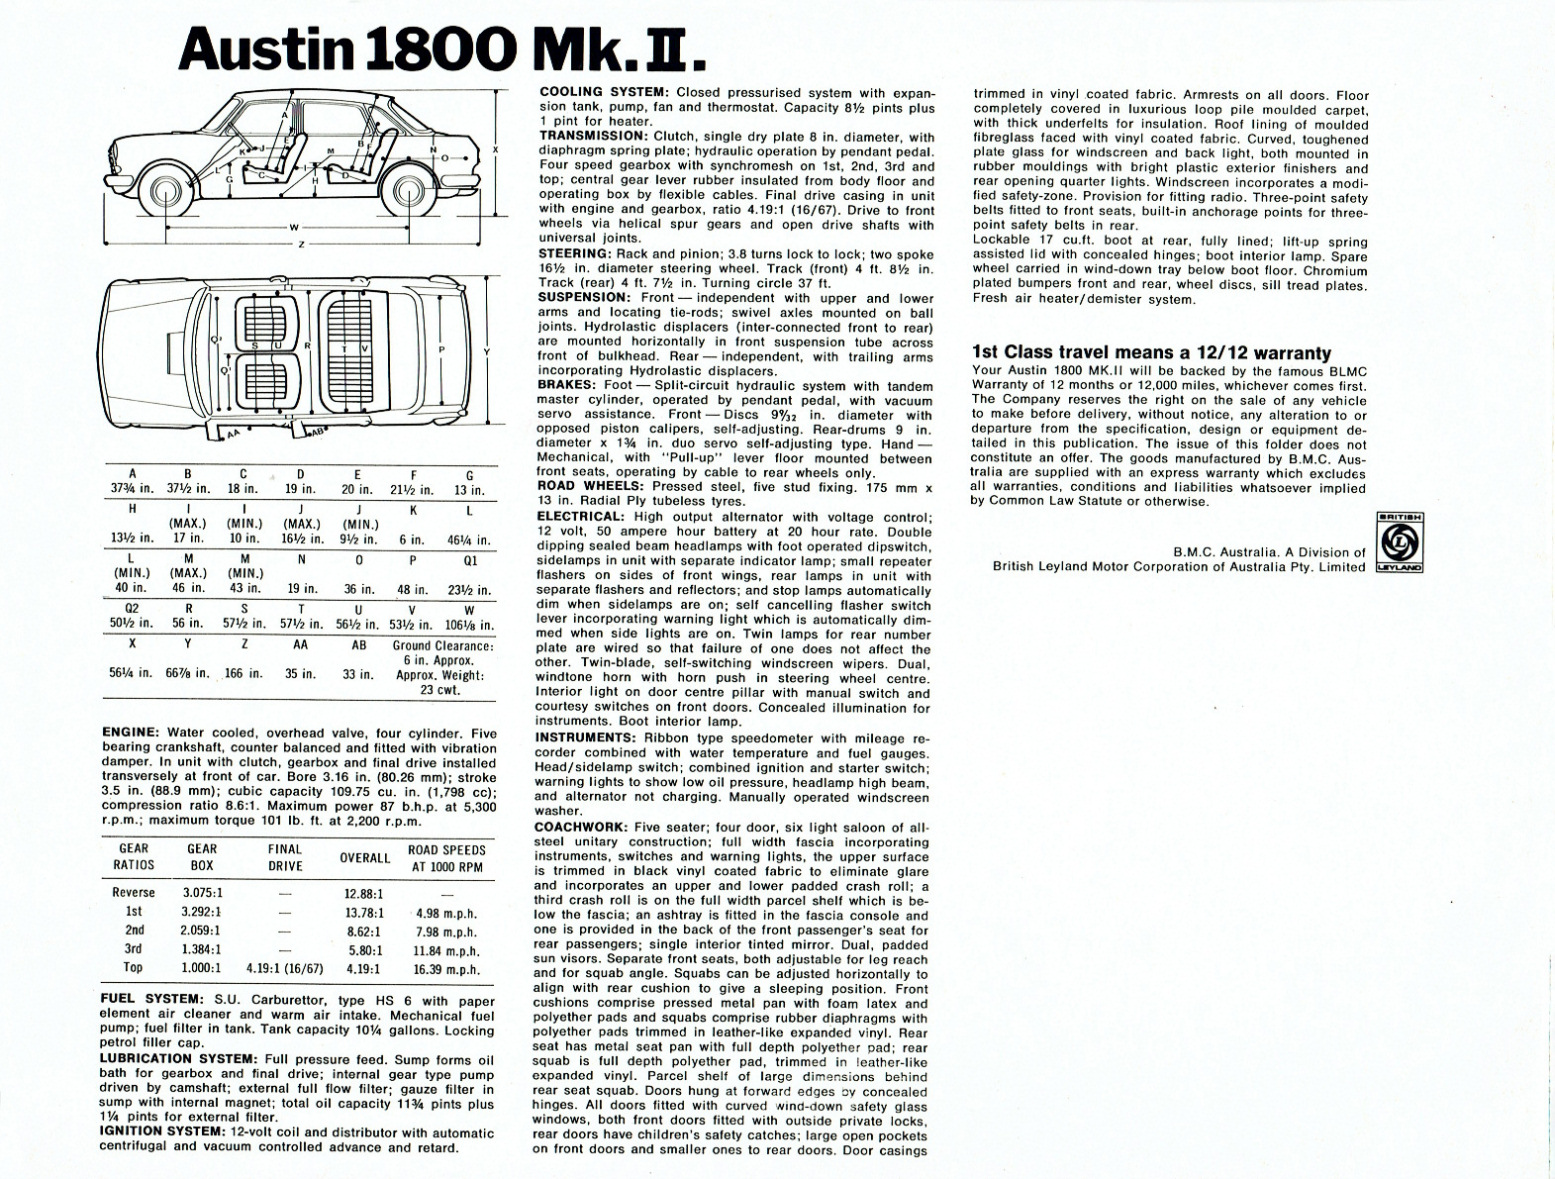 n_1968 Austin 1800 Mk II-16.jpg